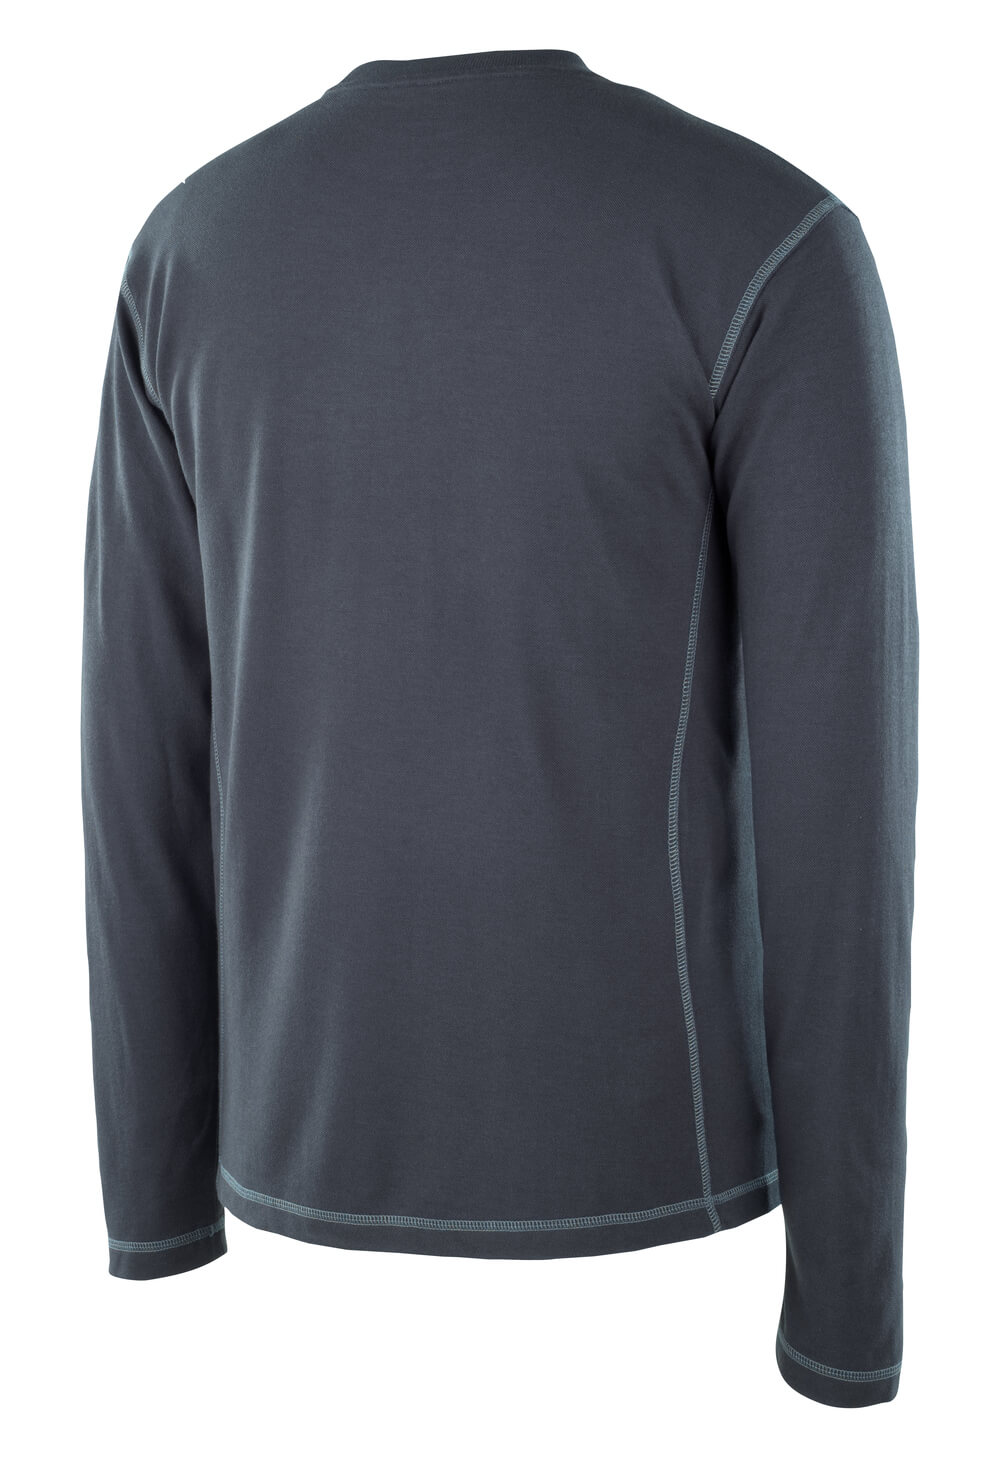 MASCOT® MULTISAFE T-Shirt, Langarm »Muri« Gr. 2XL, schwarzblau - erhältlich bei ♡ HUG Technik ✓